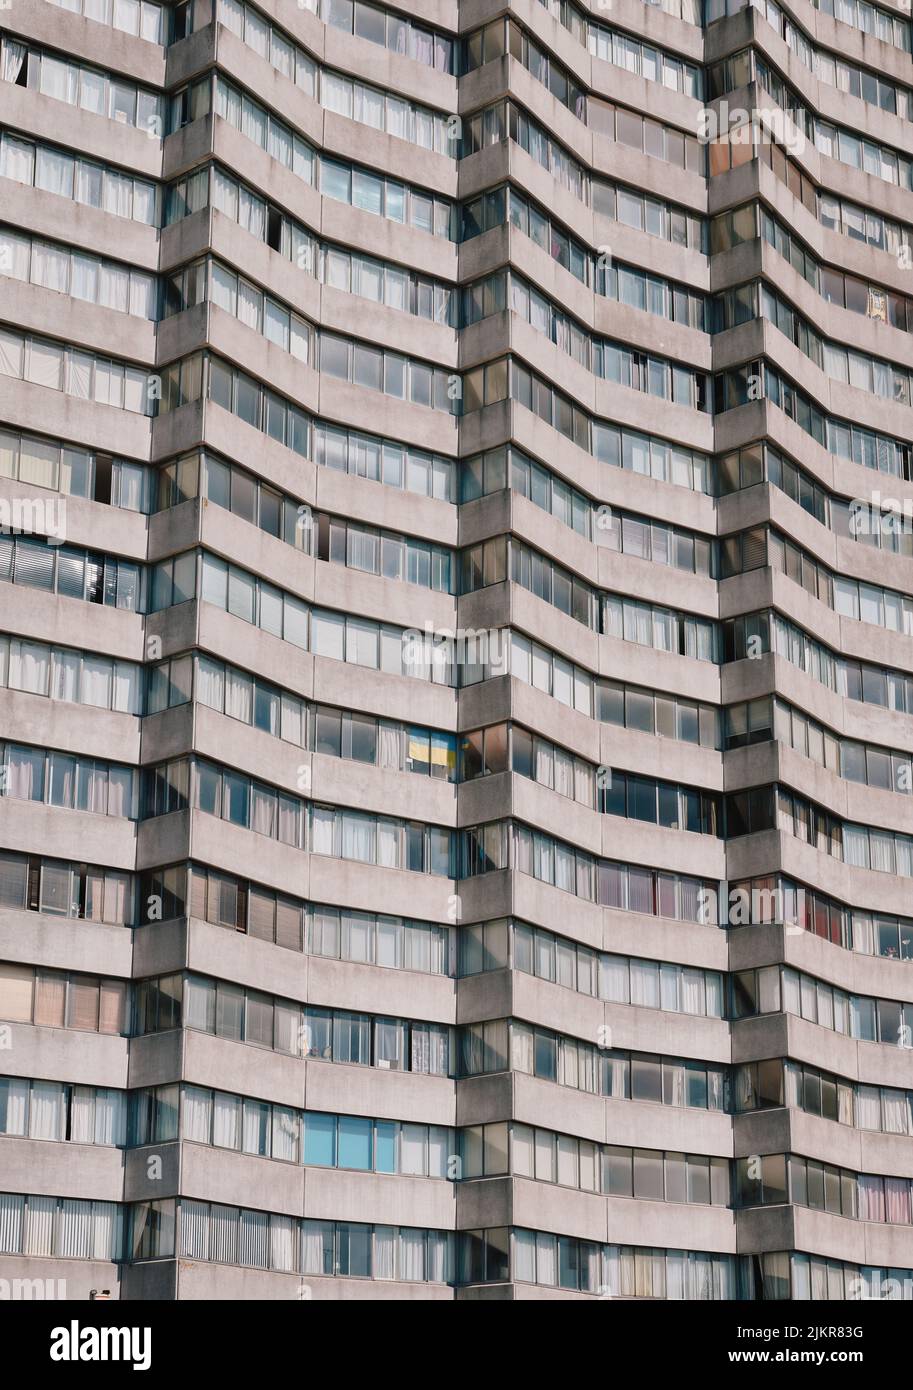 Détail de la tour d'Arlington House - immeuble résidentiel de 18 étages de 58 mètres de haut, Margate Kent, Angleterre Royaume-Uni. Construit en 1964 architecture brutaliste Banque D'Images